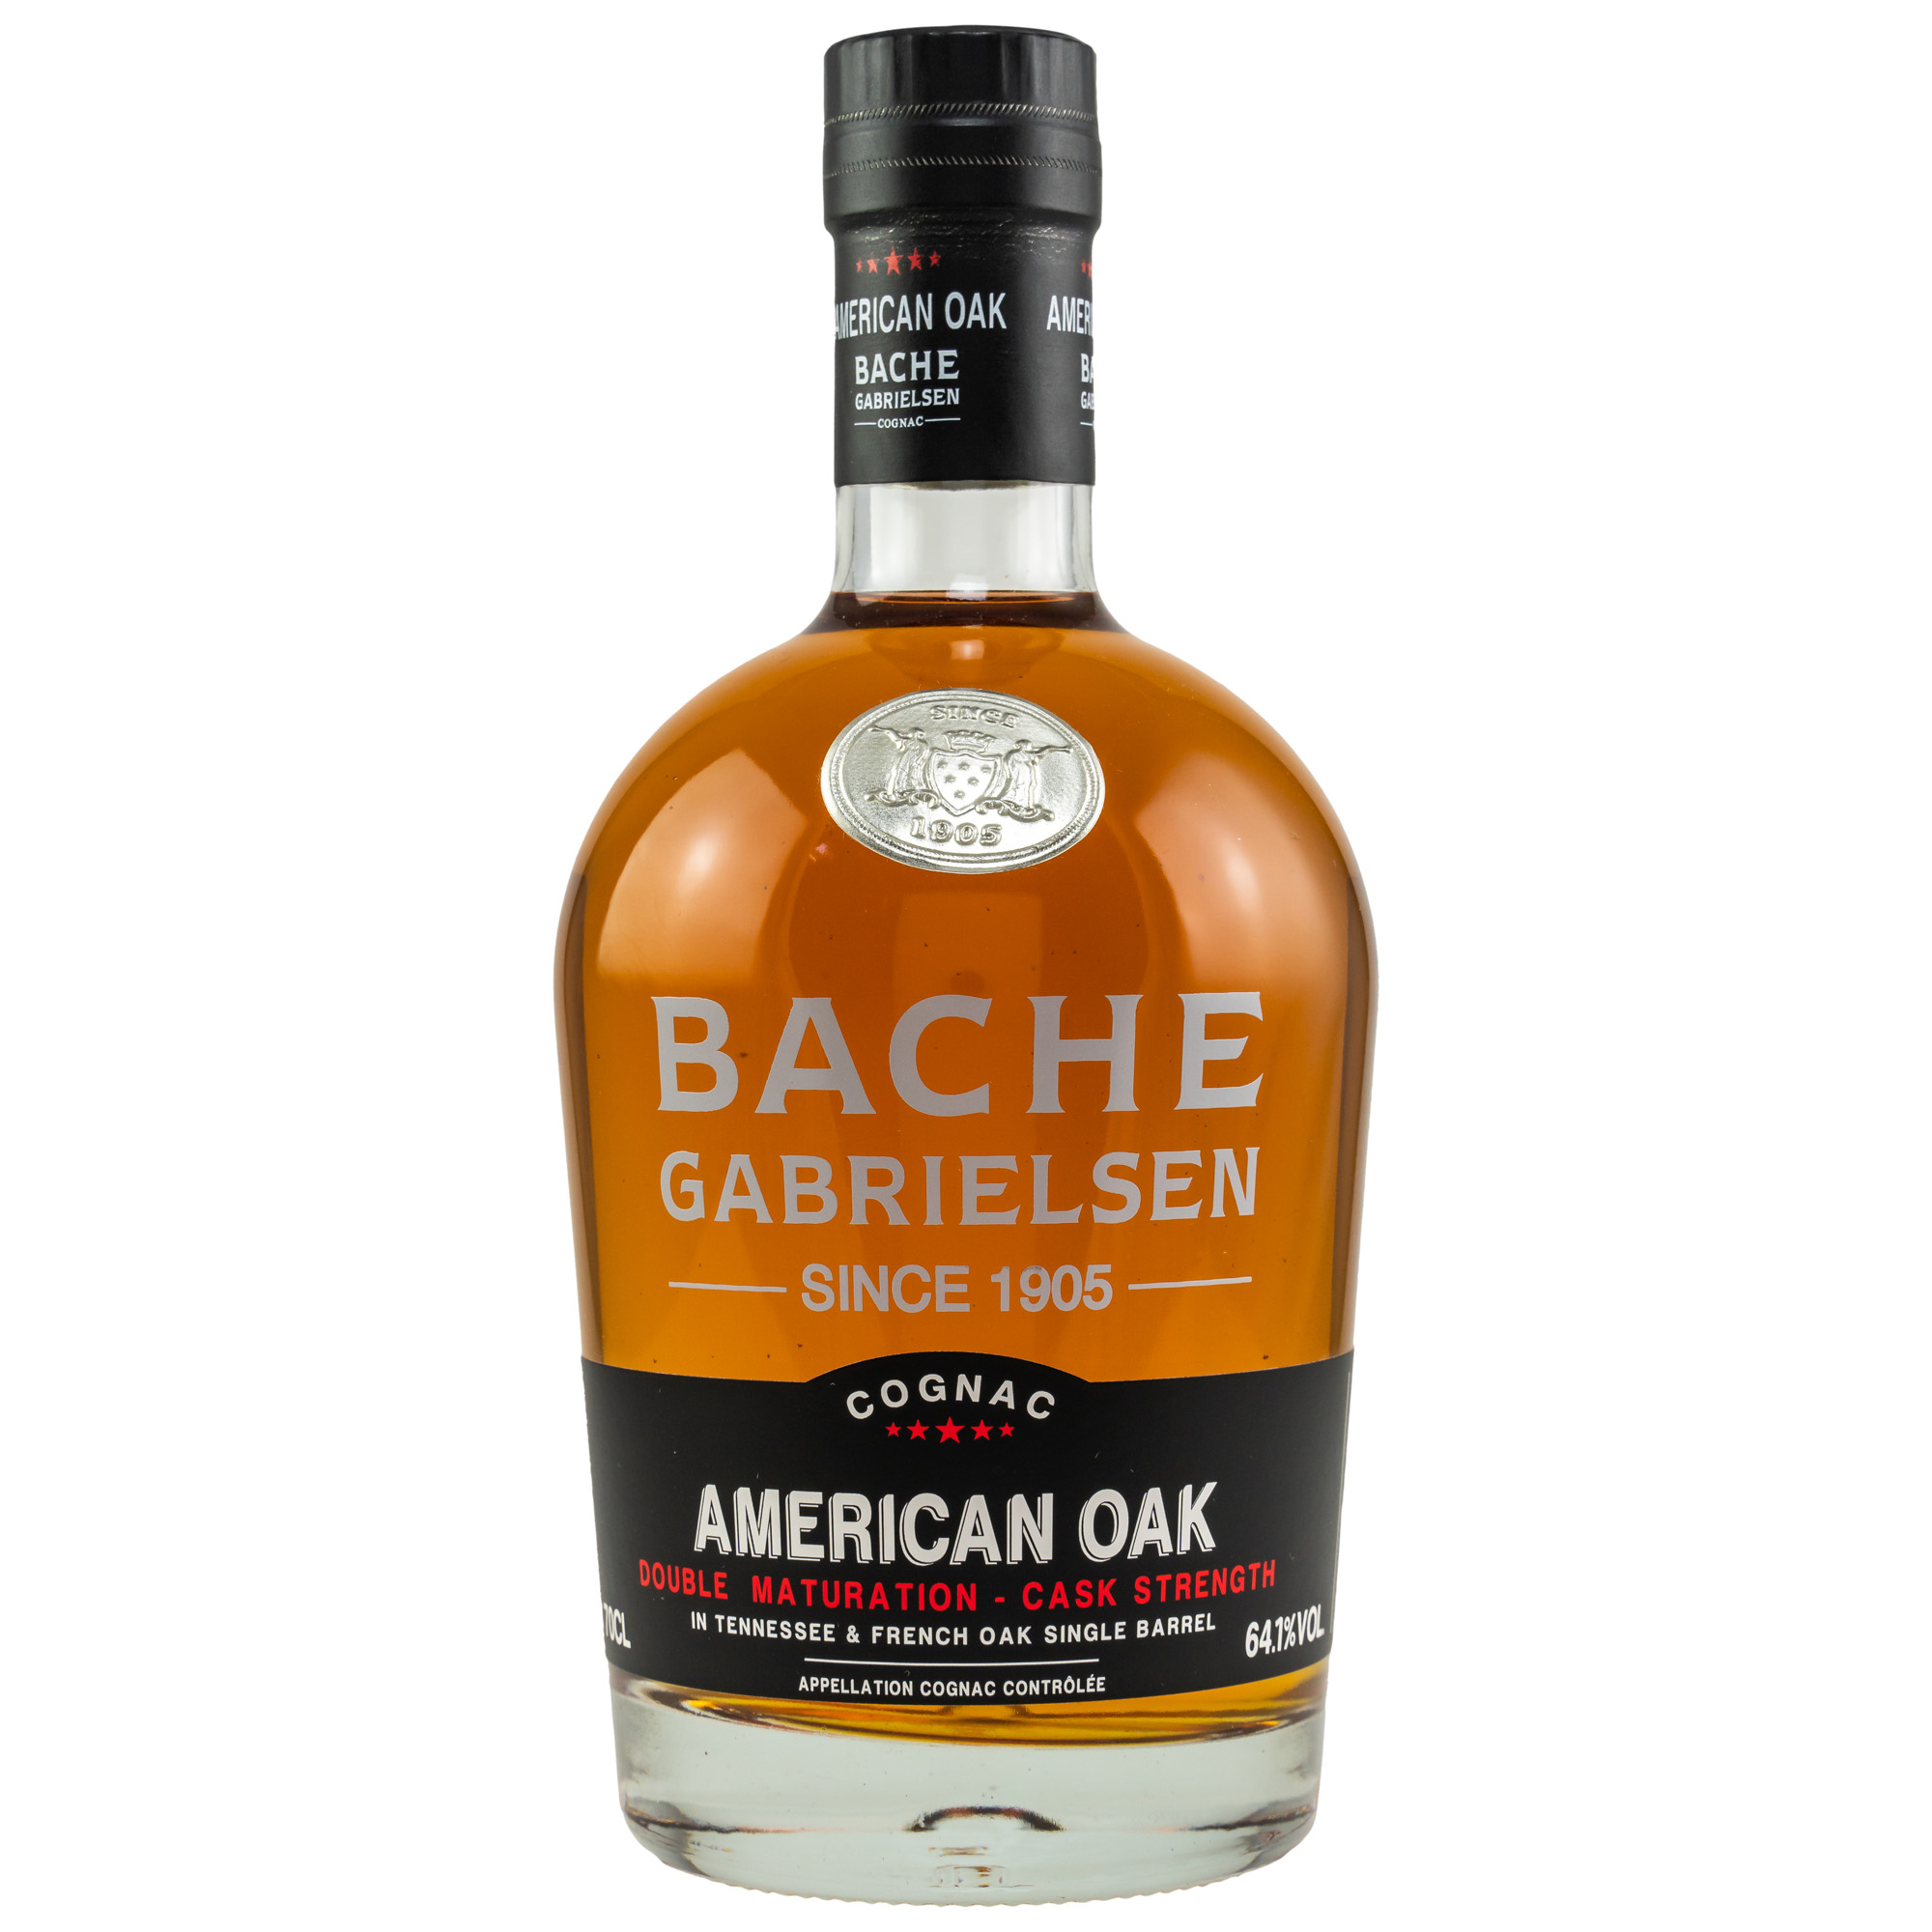 Bache-Gabrielsen American Oak Single Cask Cognac 0,7 ltr. 64,1% Vol.